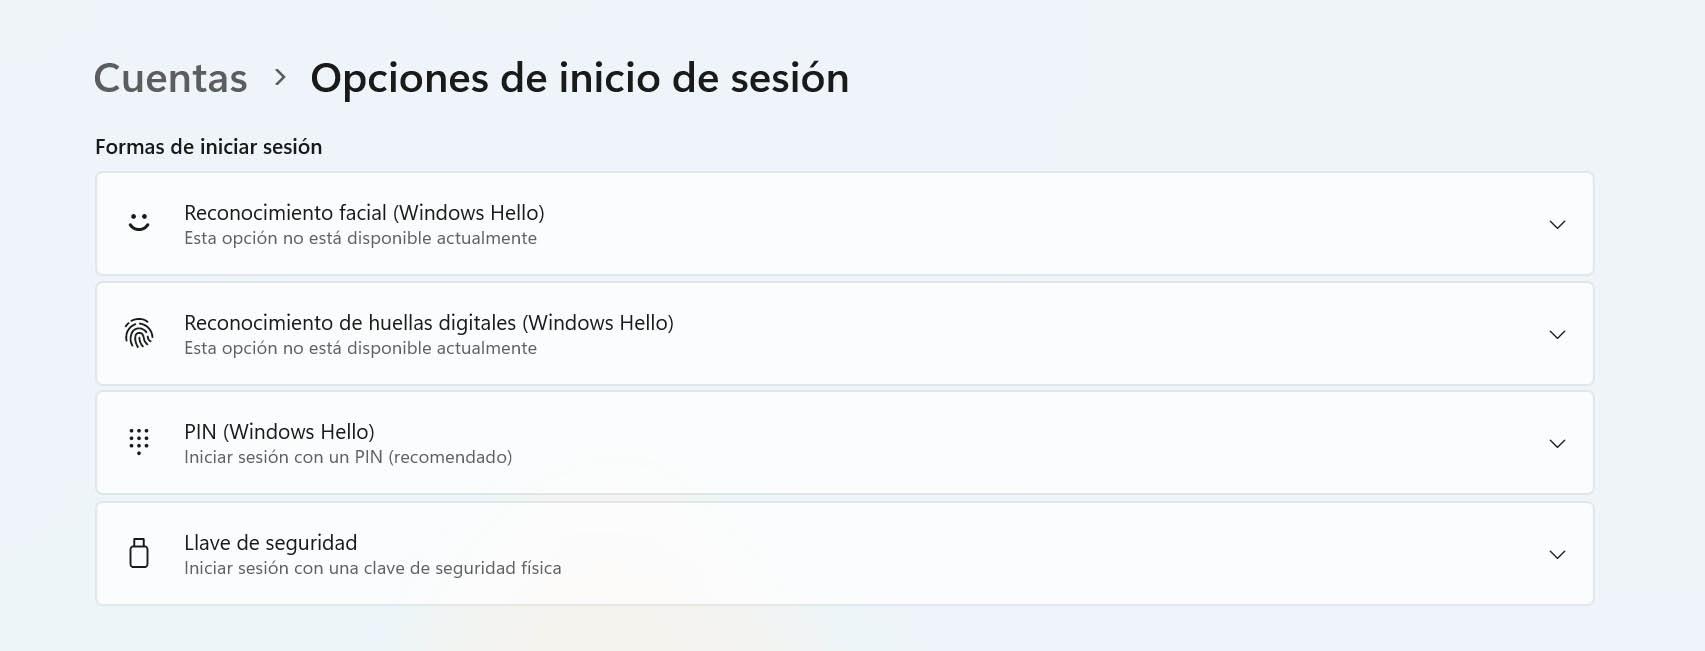 Opciones de inicio de sesión con Windows Hello